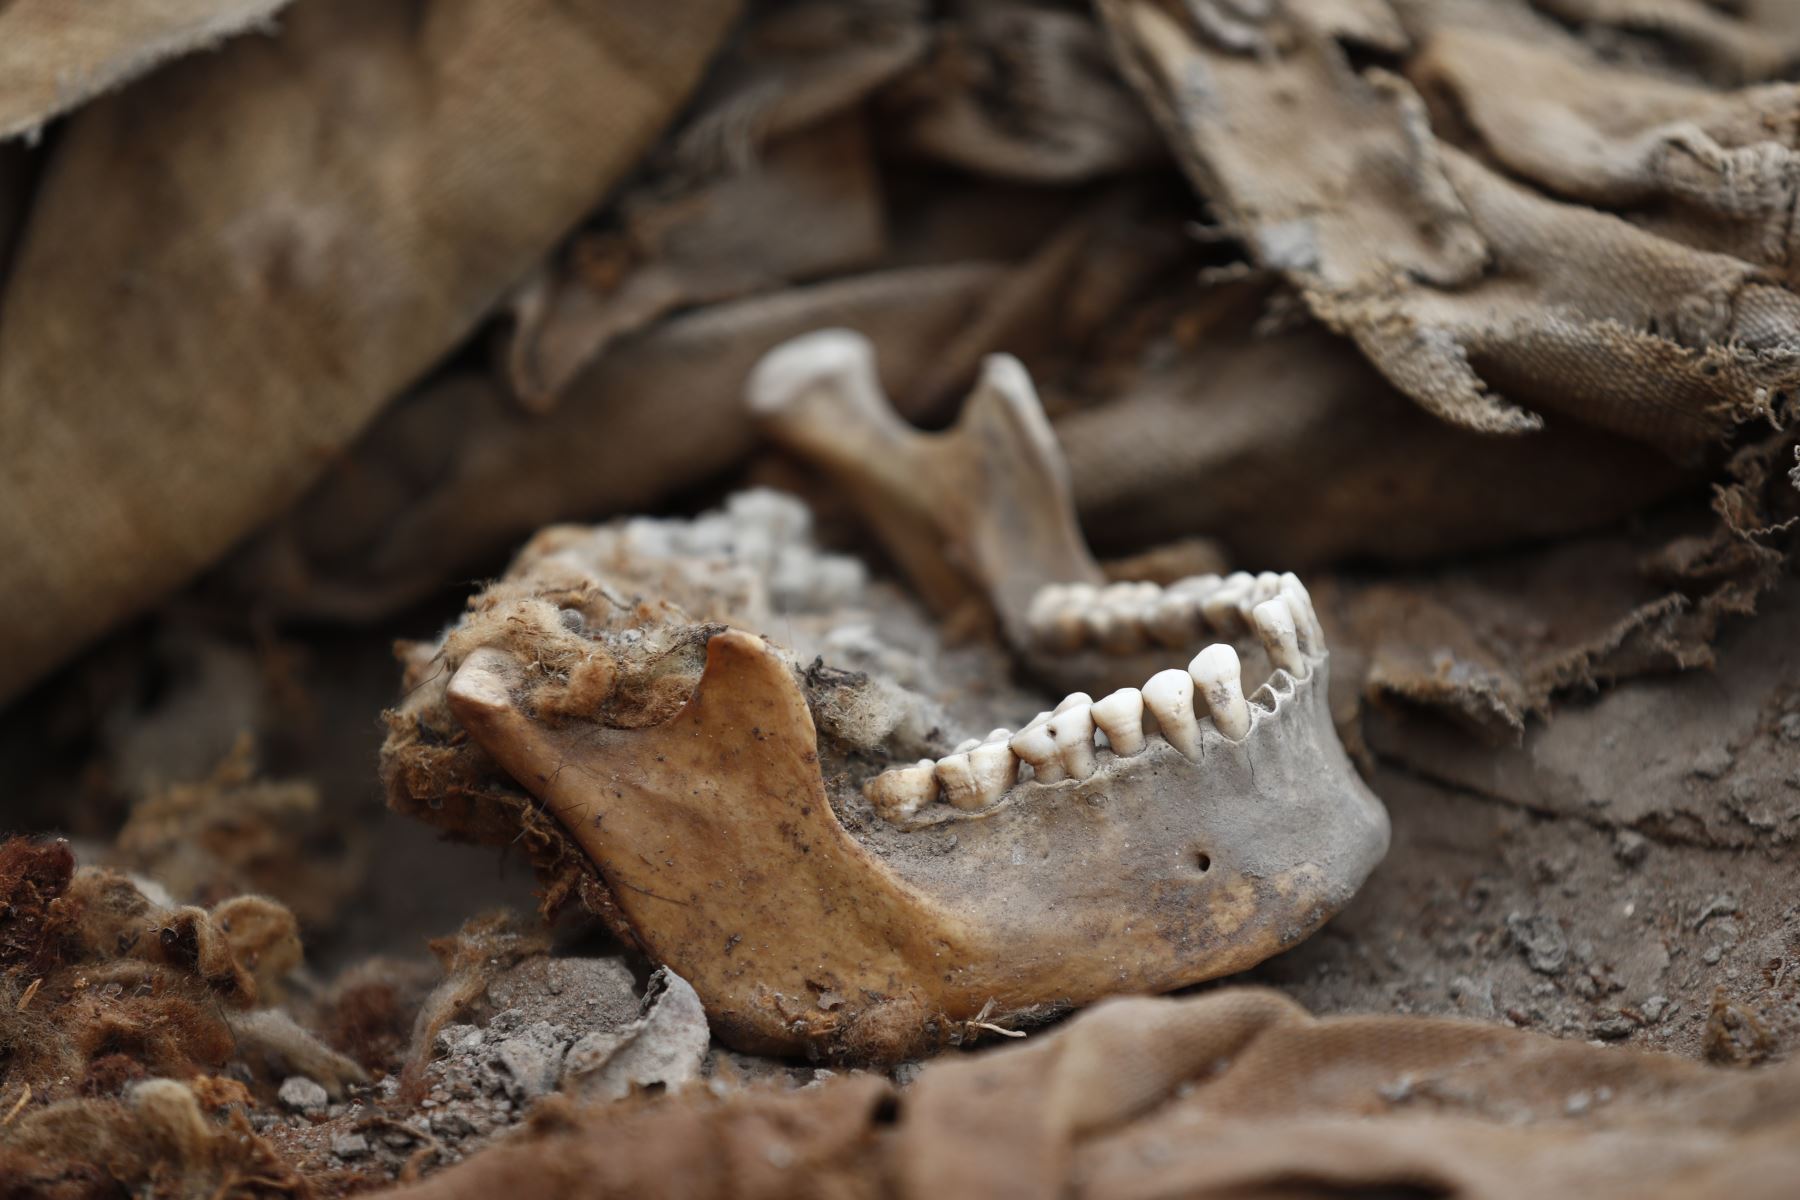 Uno de los 3 fardos funerarios descubiertos en la huaca Tambo Inga de Puente Piedra corresponde a una mujer de entre 18 a 23 años de edad. Foto: ANDINA/Daniel Bracamonte